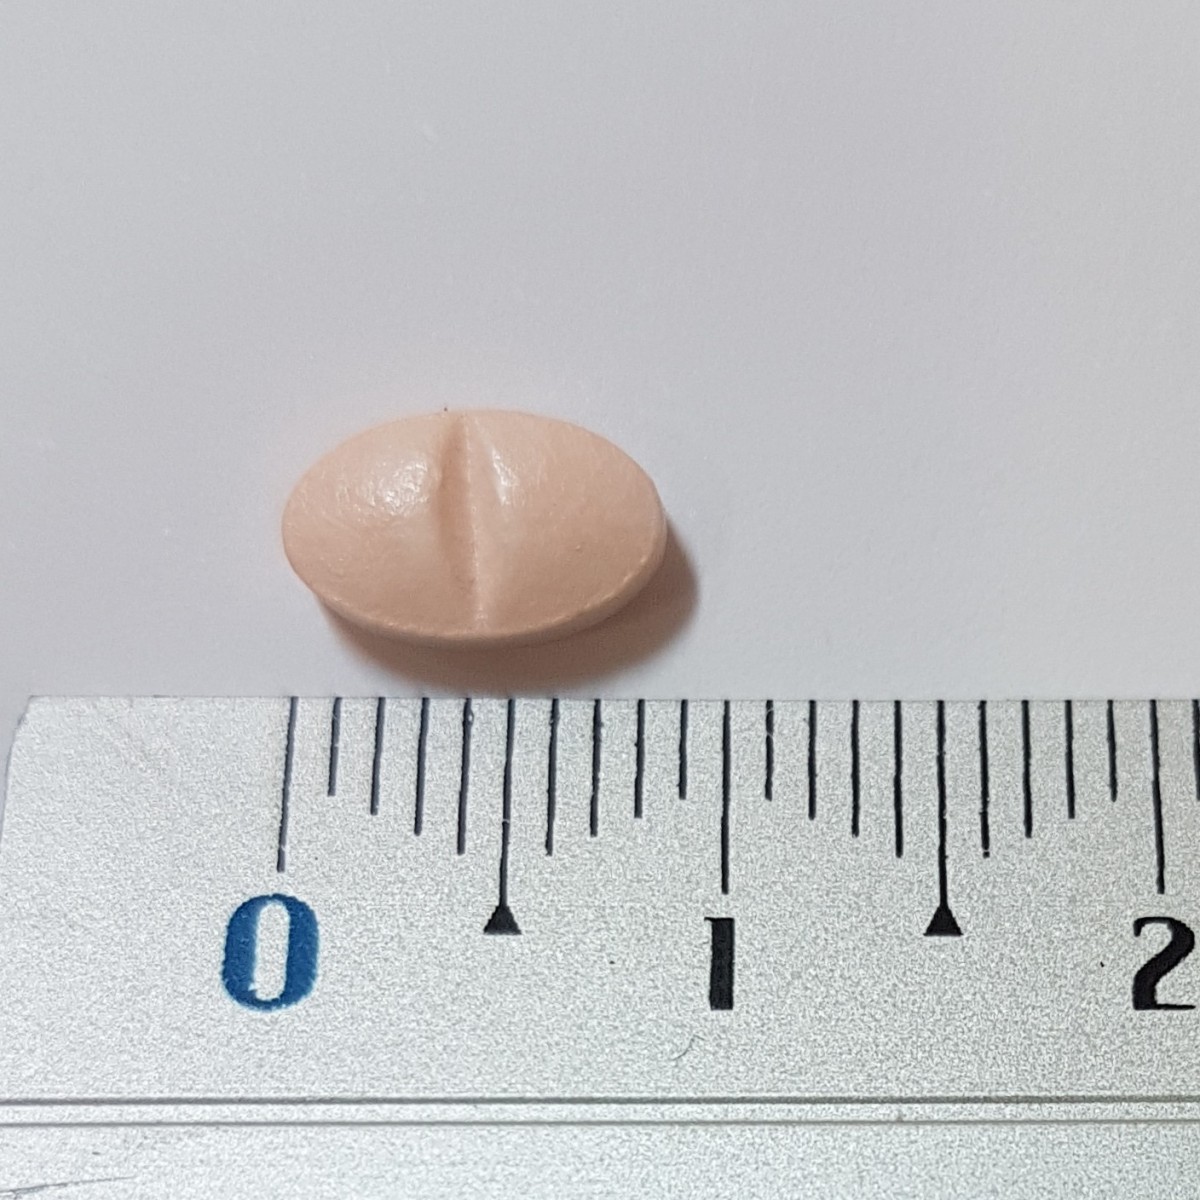 SIMVASTATINA UXA 10 mg COMPRIMIDOS EFG , 28 comprimidos fotografía de la forma farmacéutica.